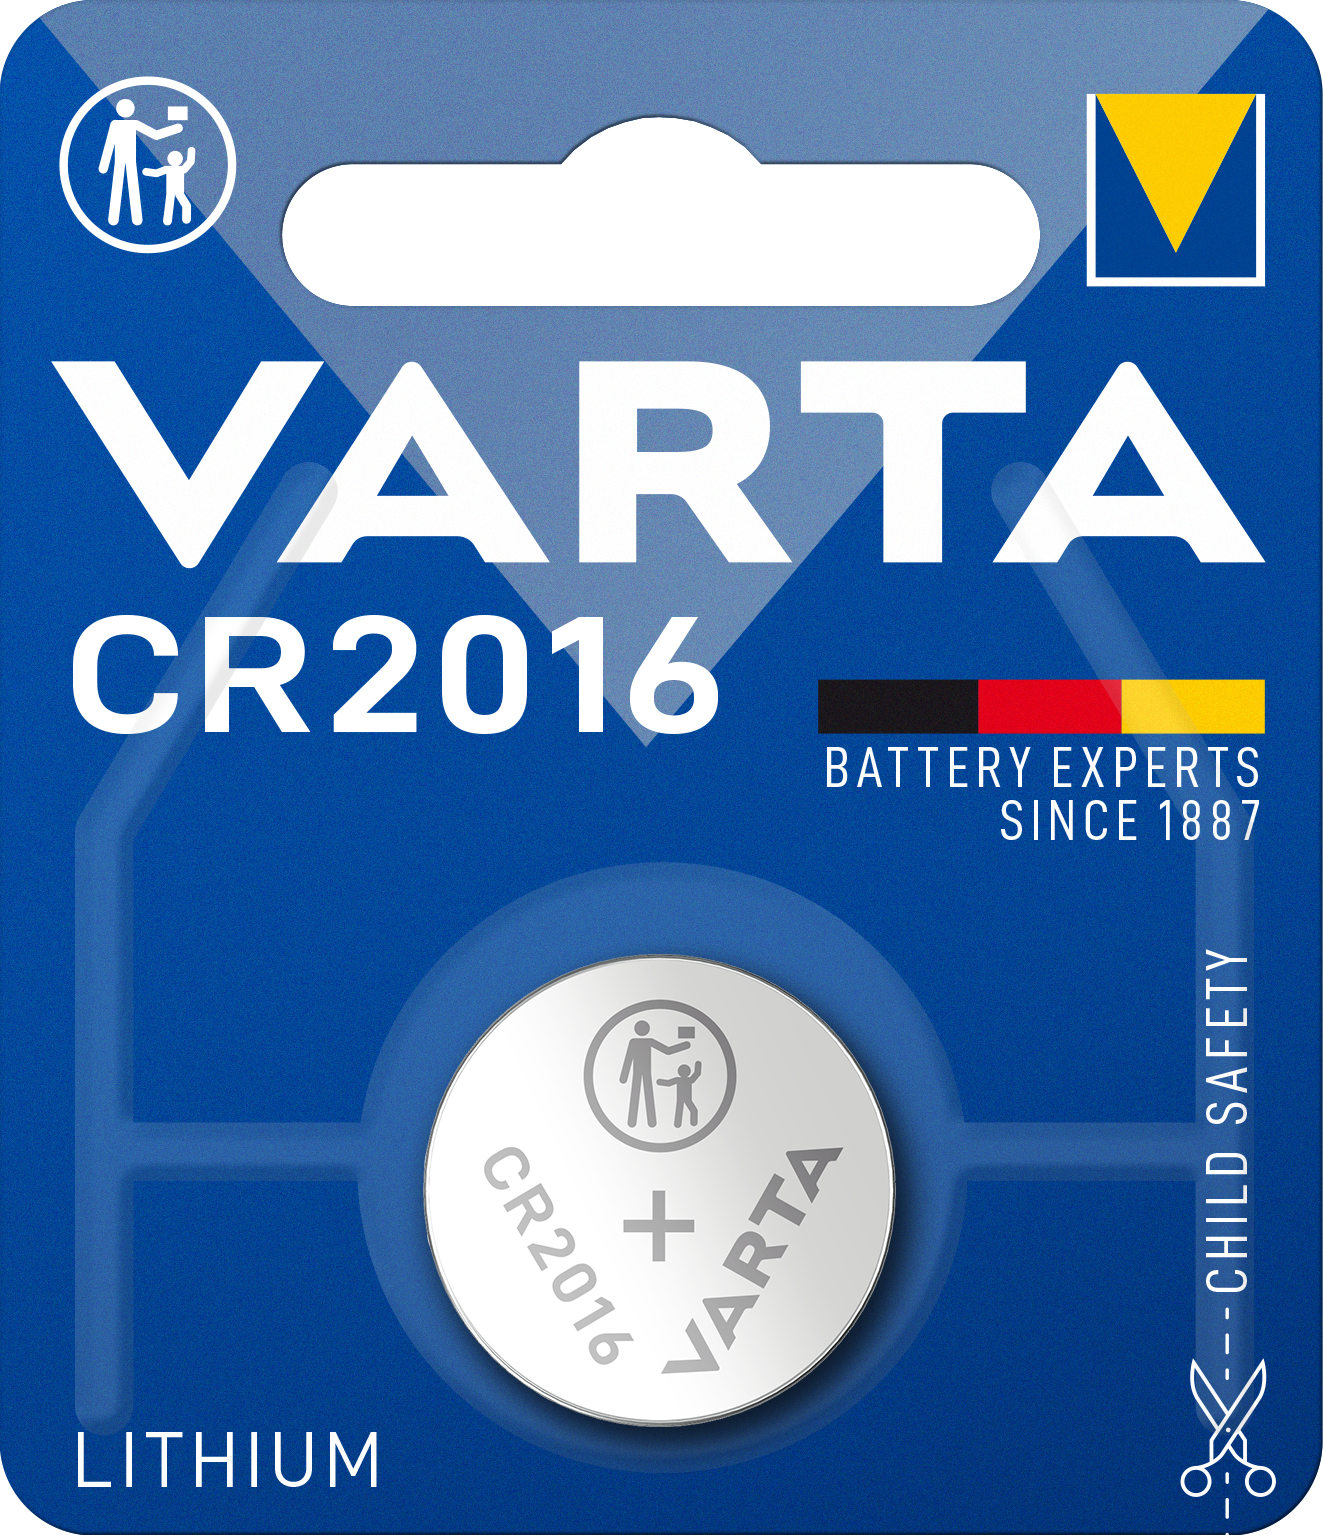 VARTA - Lithium - 2016